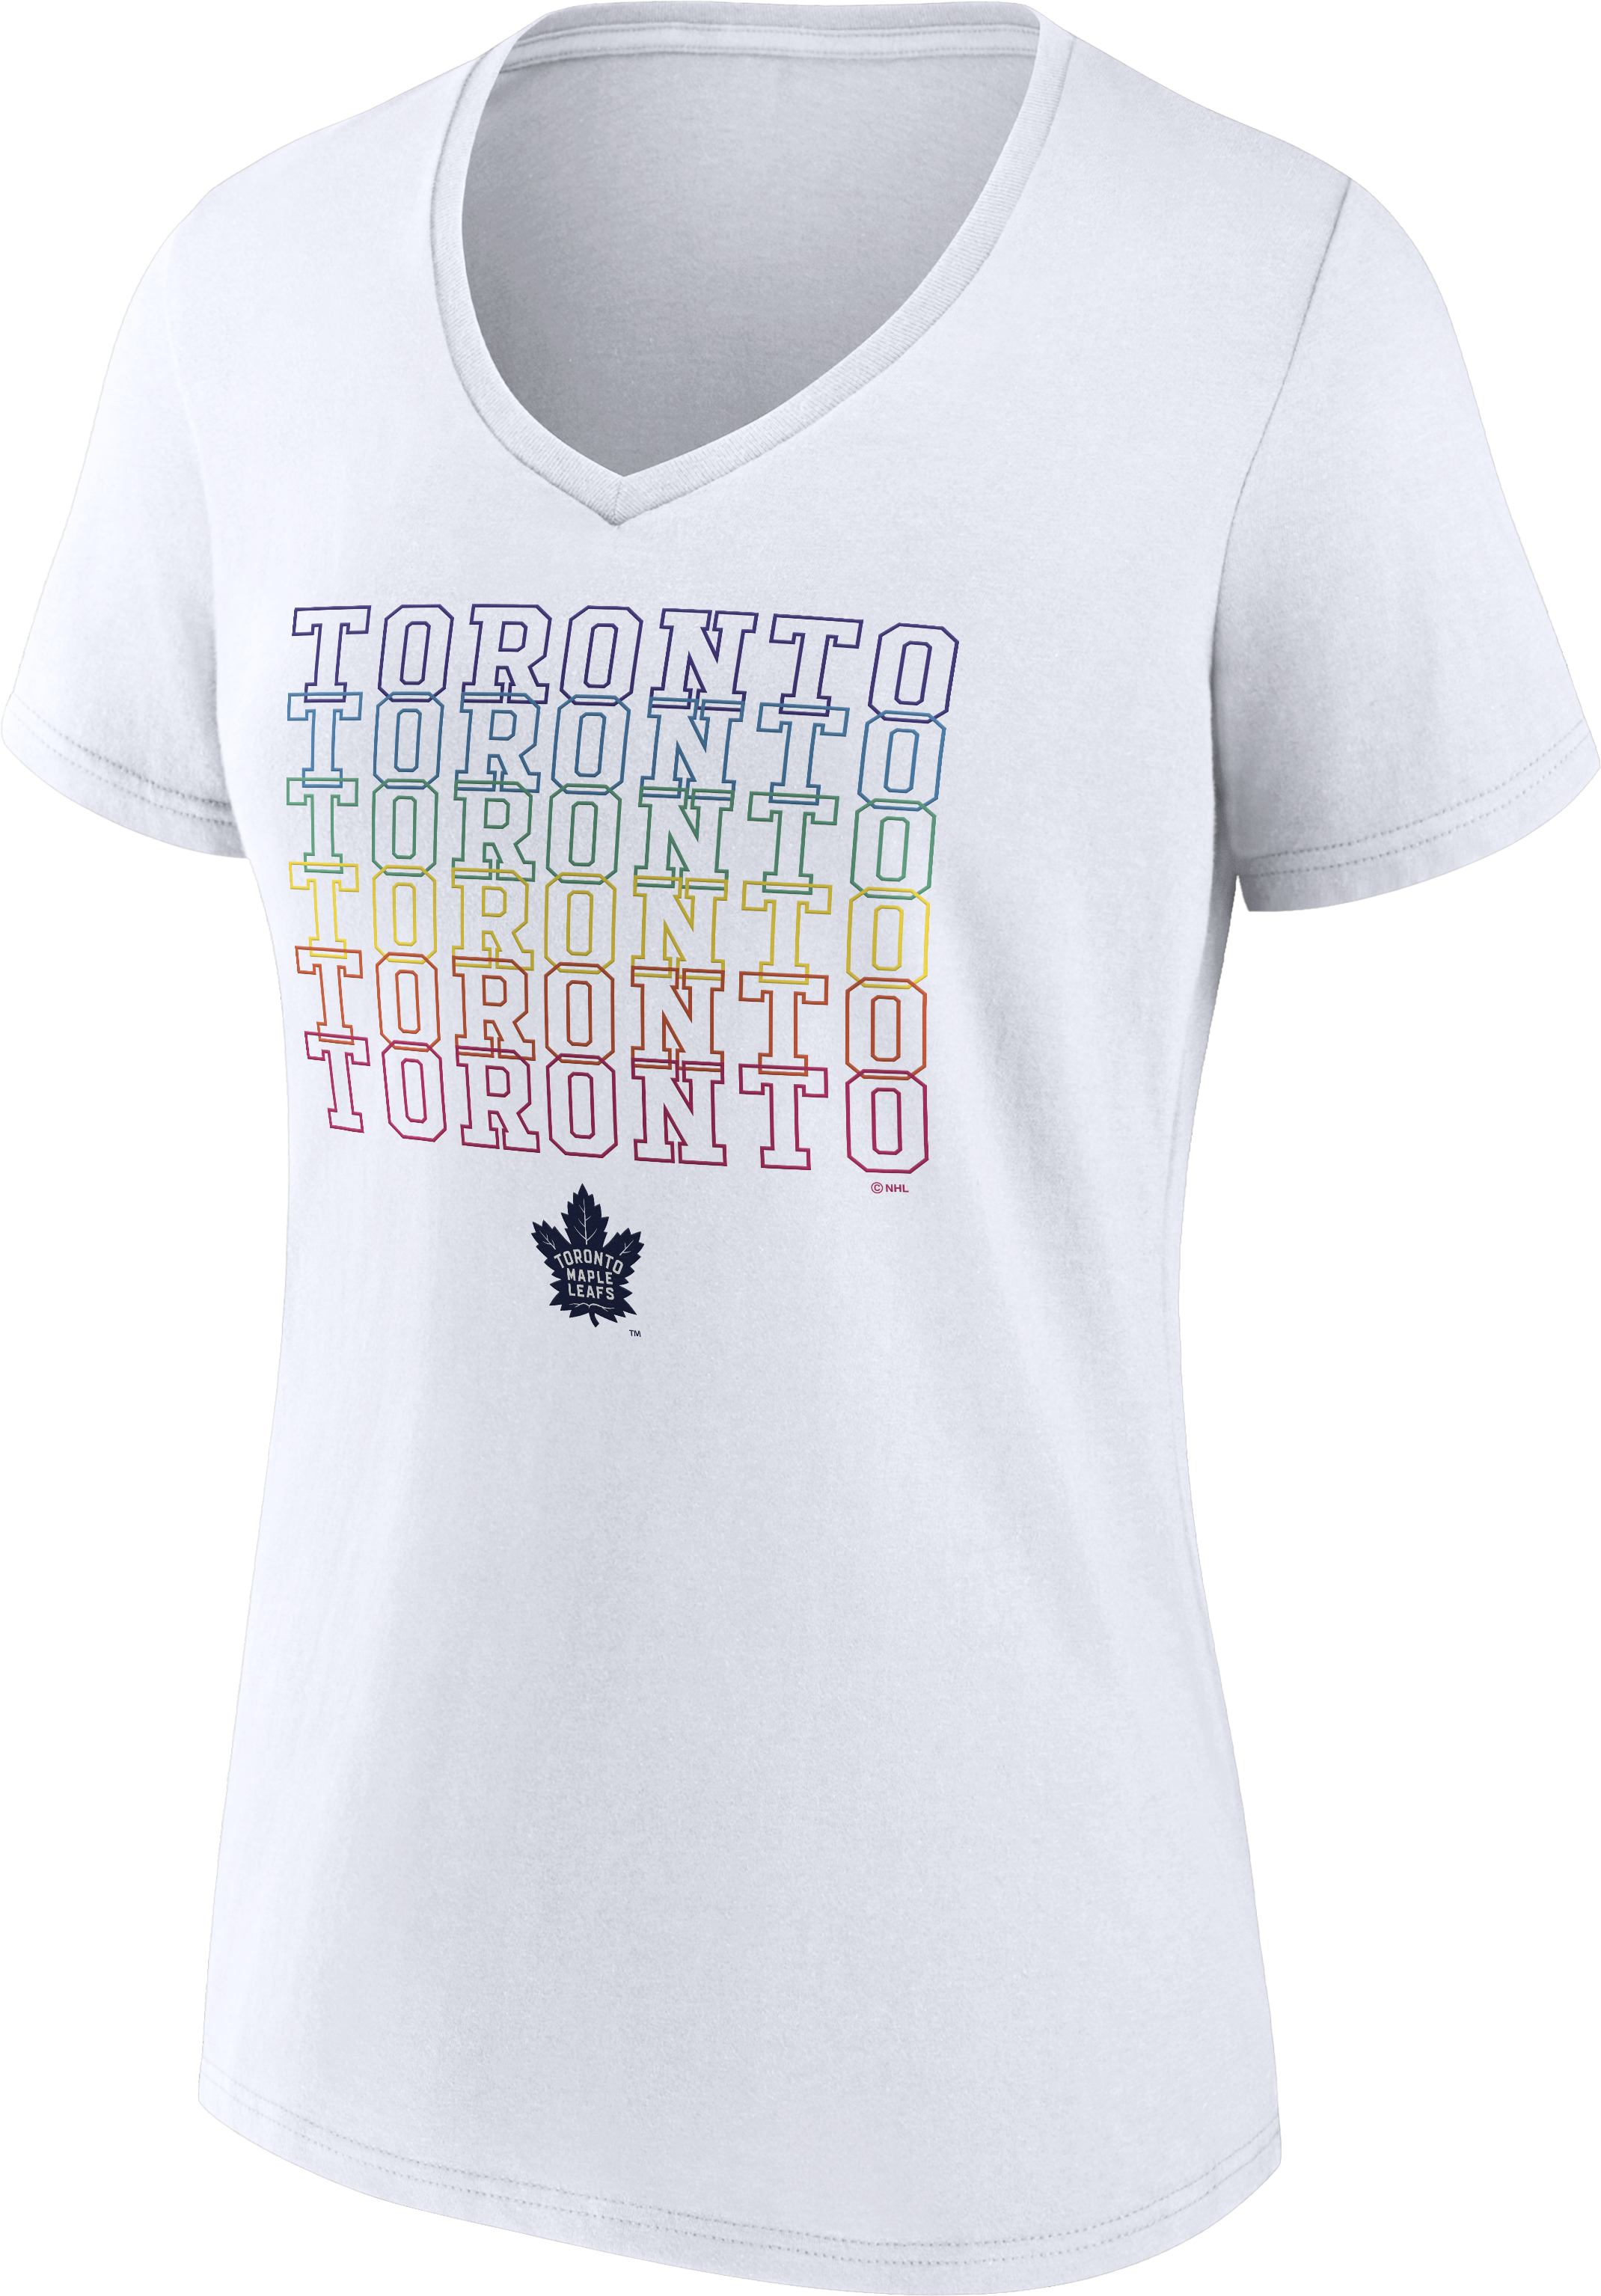 Maple Leafs Fanatics Pride V-neck Tee